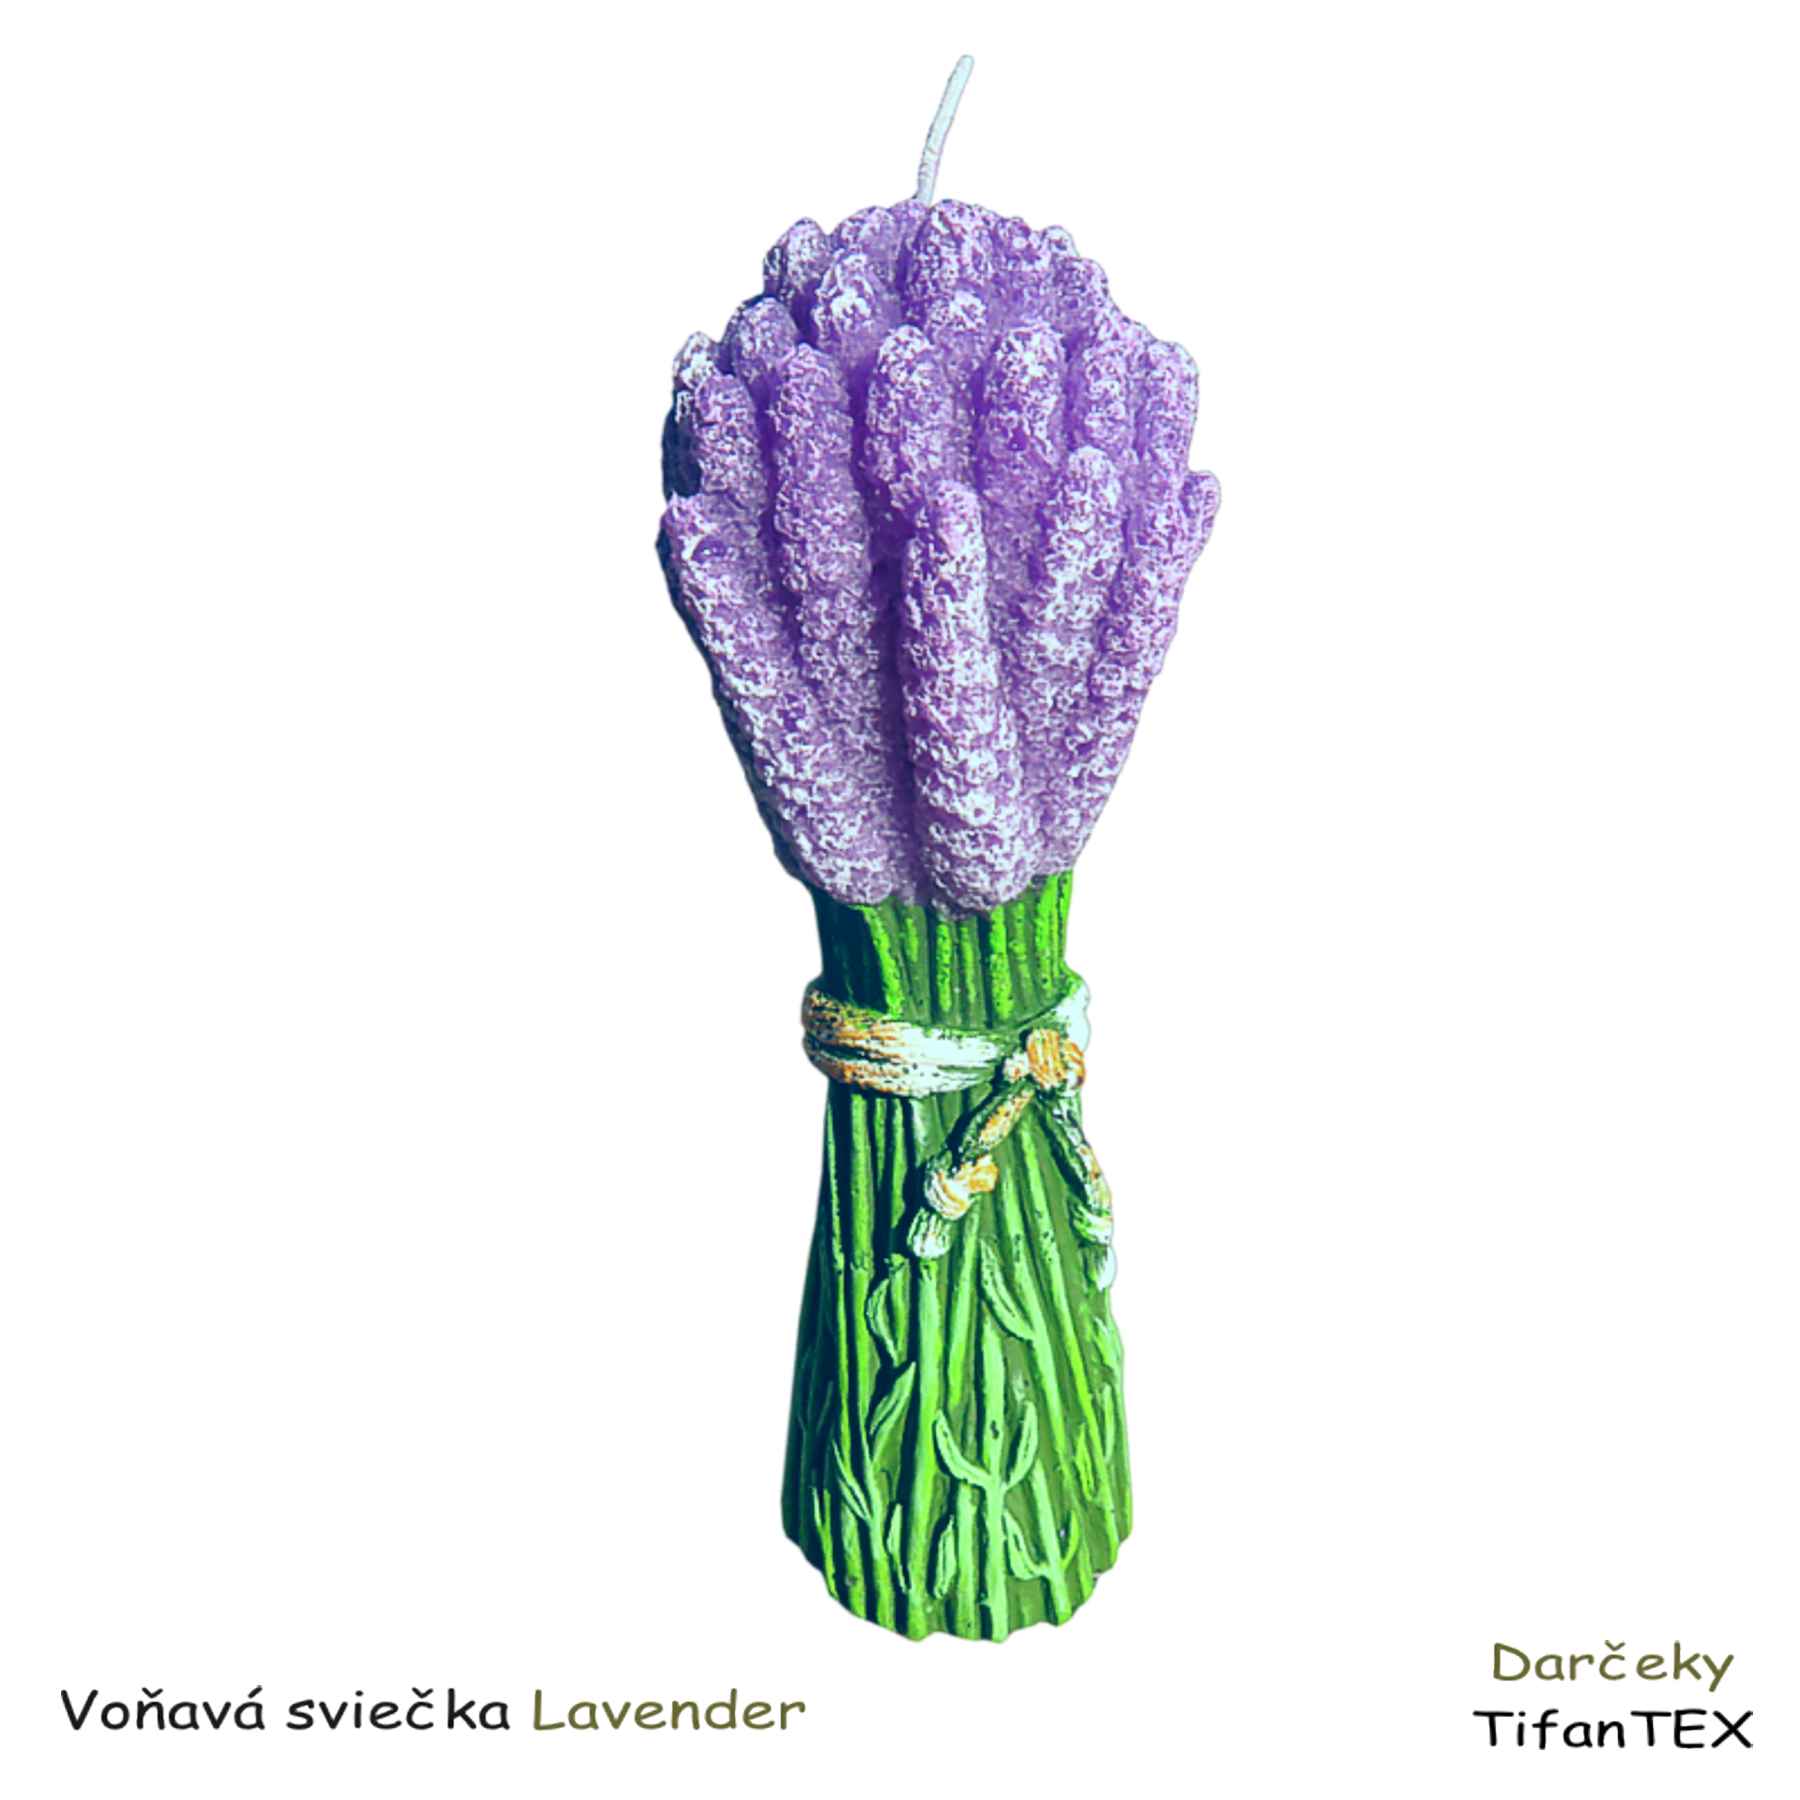 Voňavá sviečka Lavender